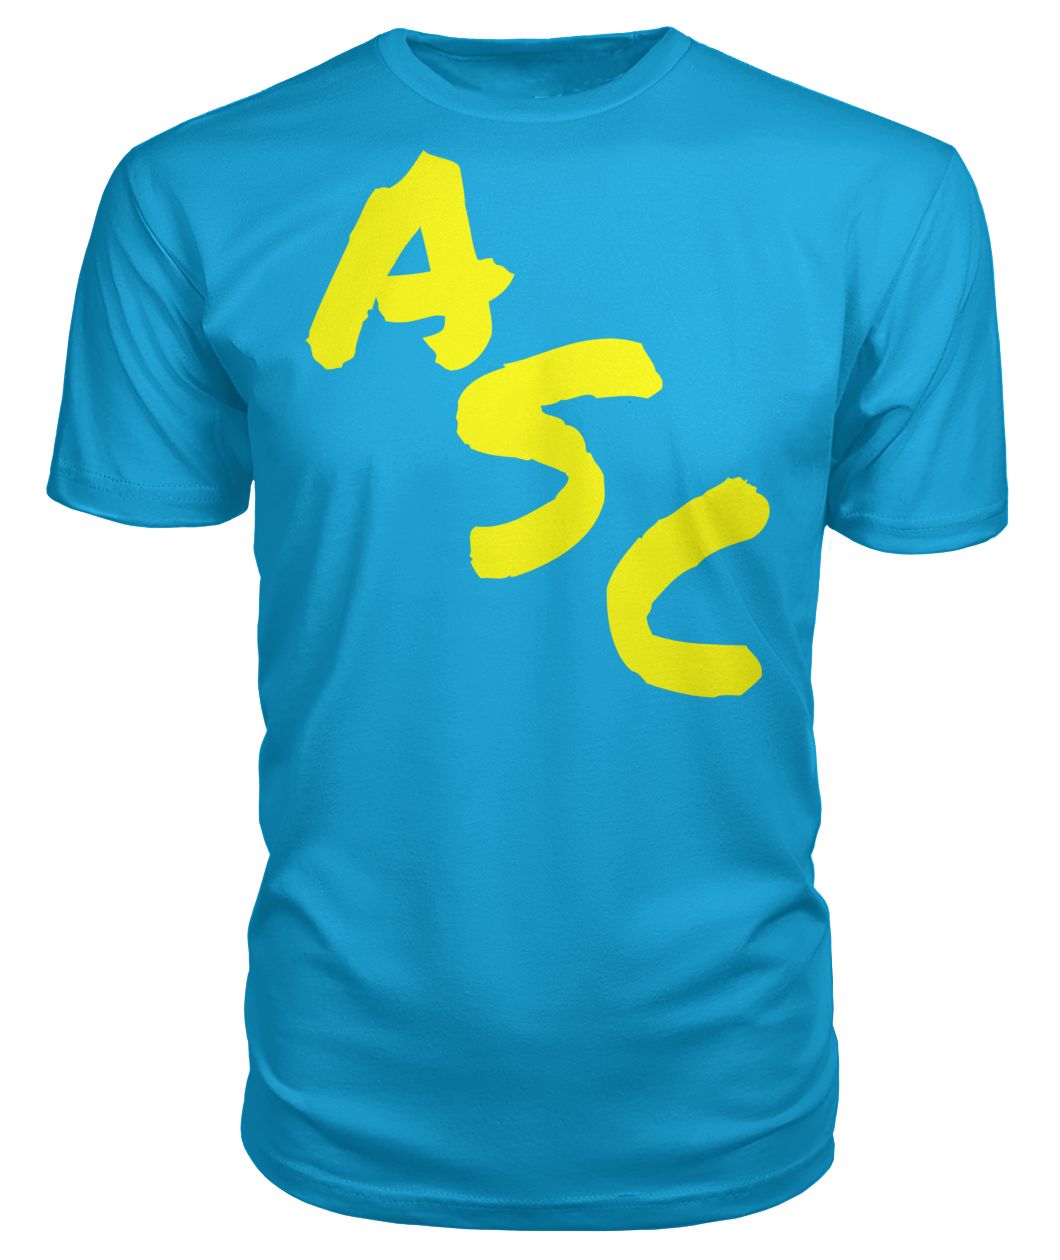 ASC Unisex Cross T-Shirt